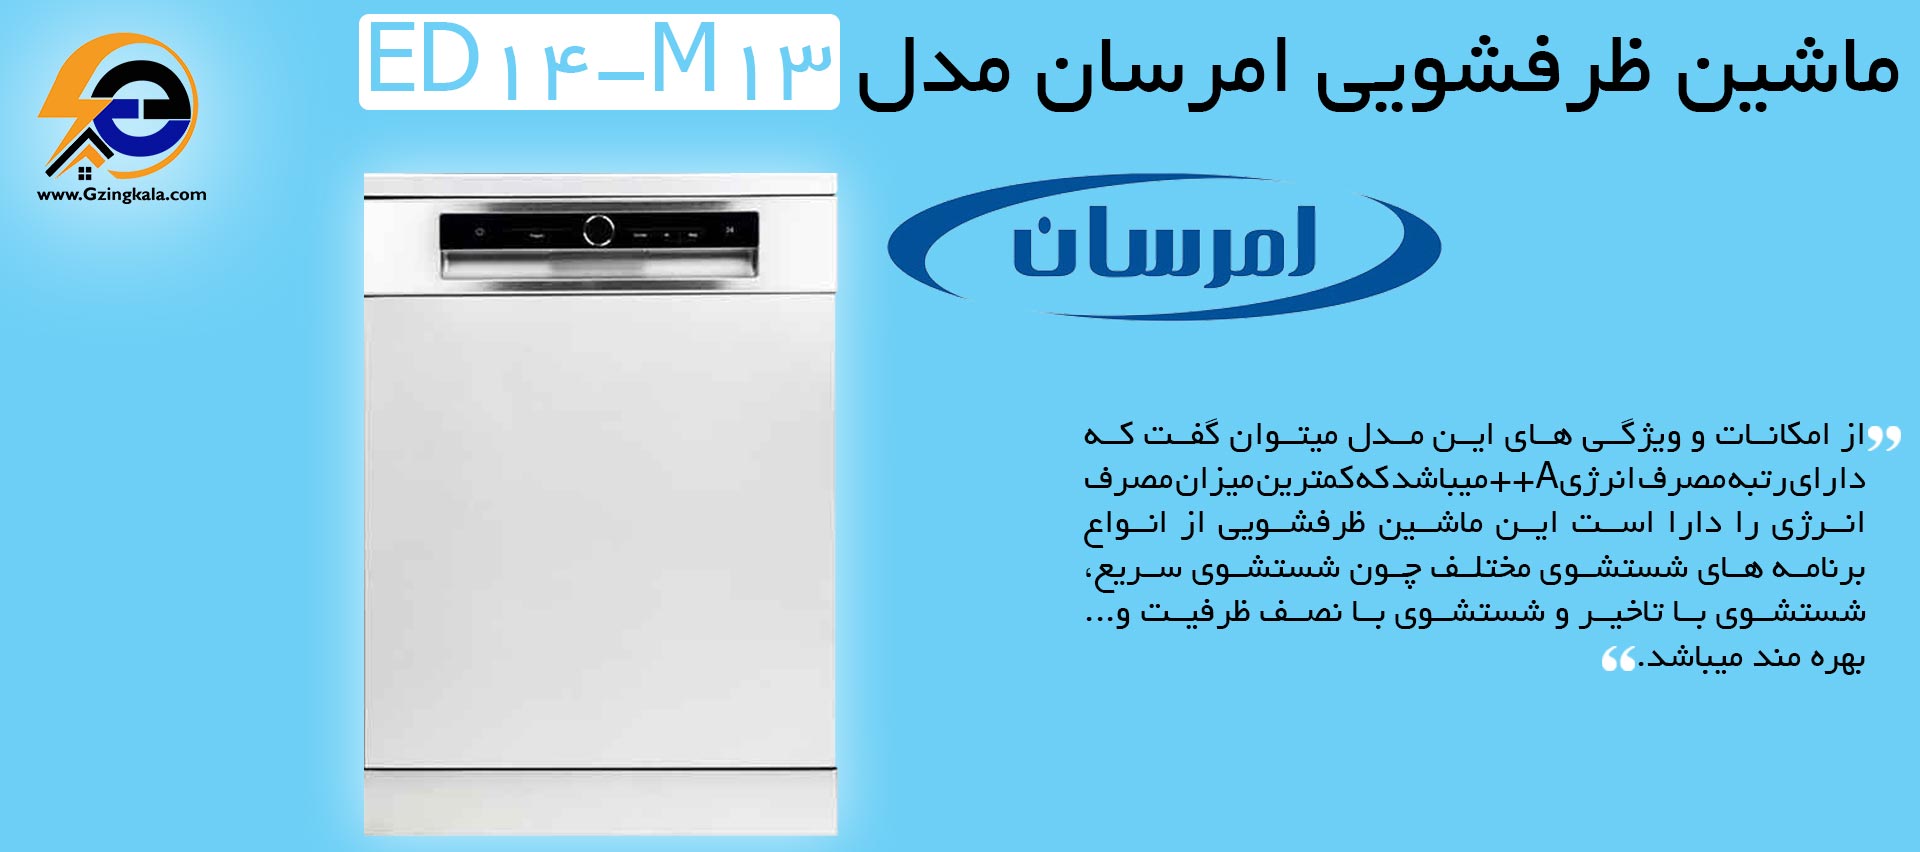 ماشین ظرفشویی امرسان مدل ED14-M13